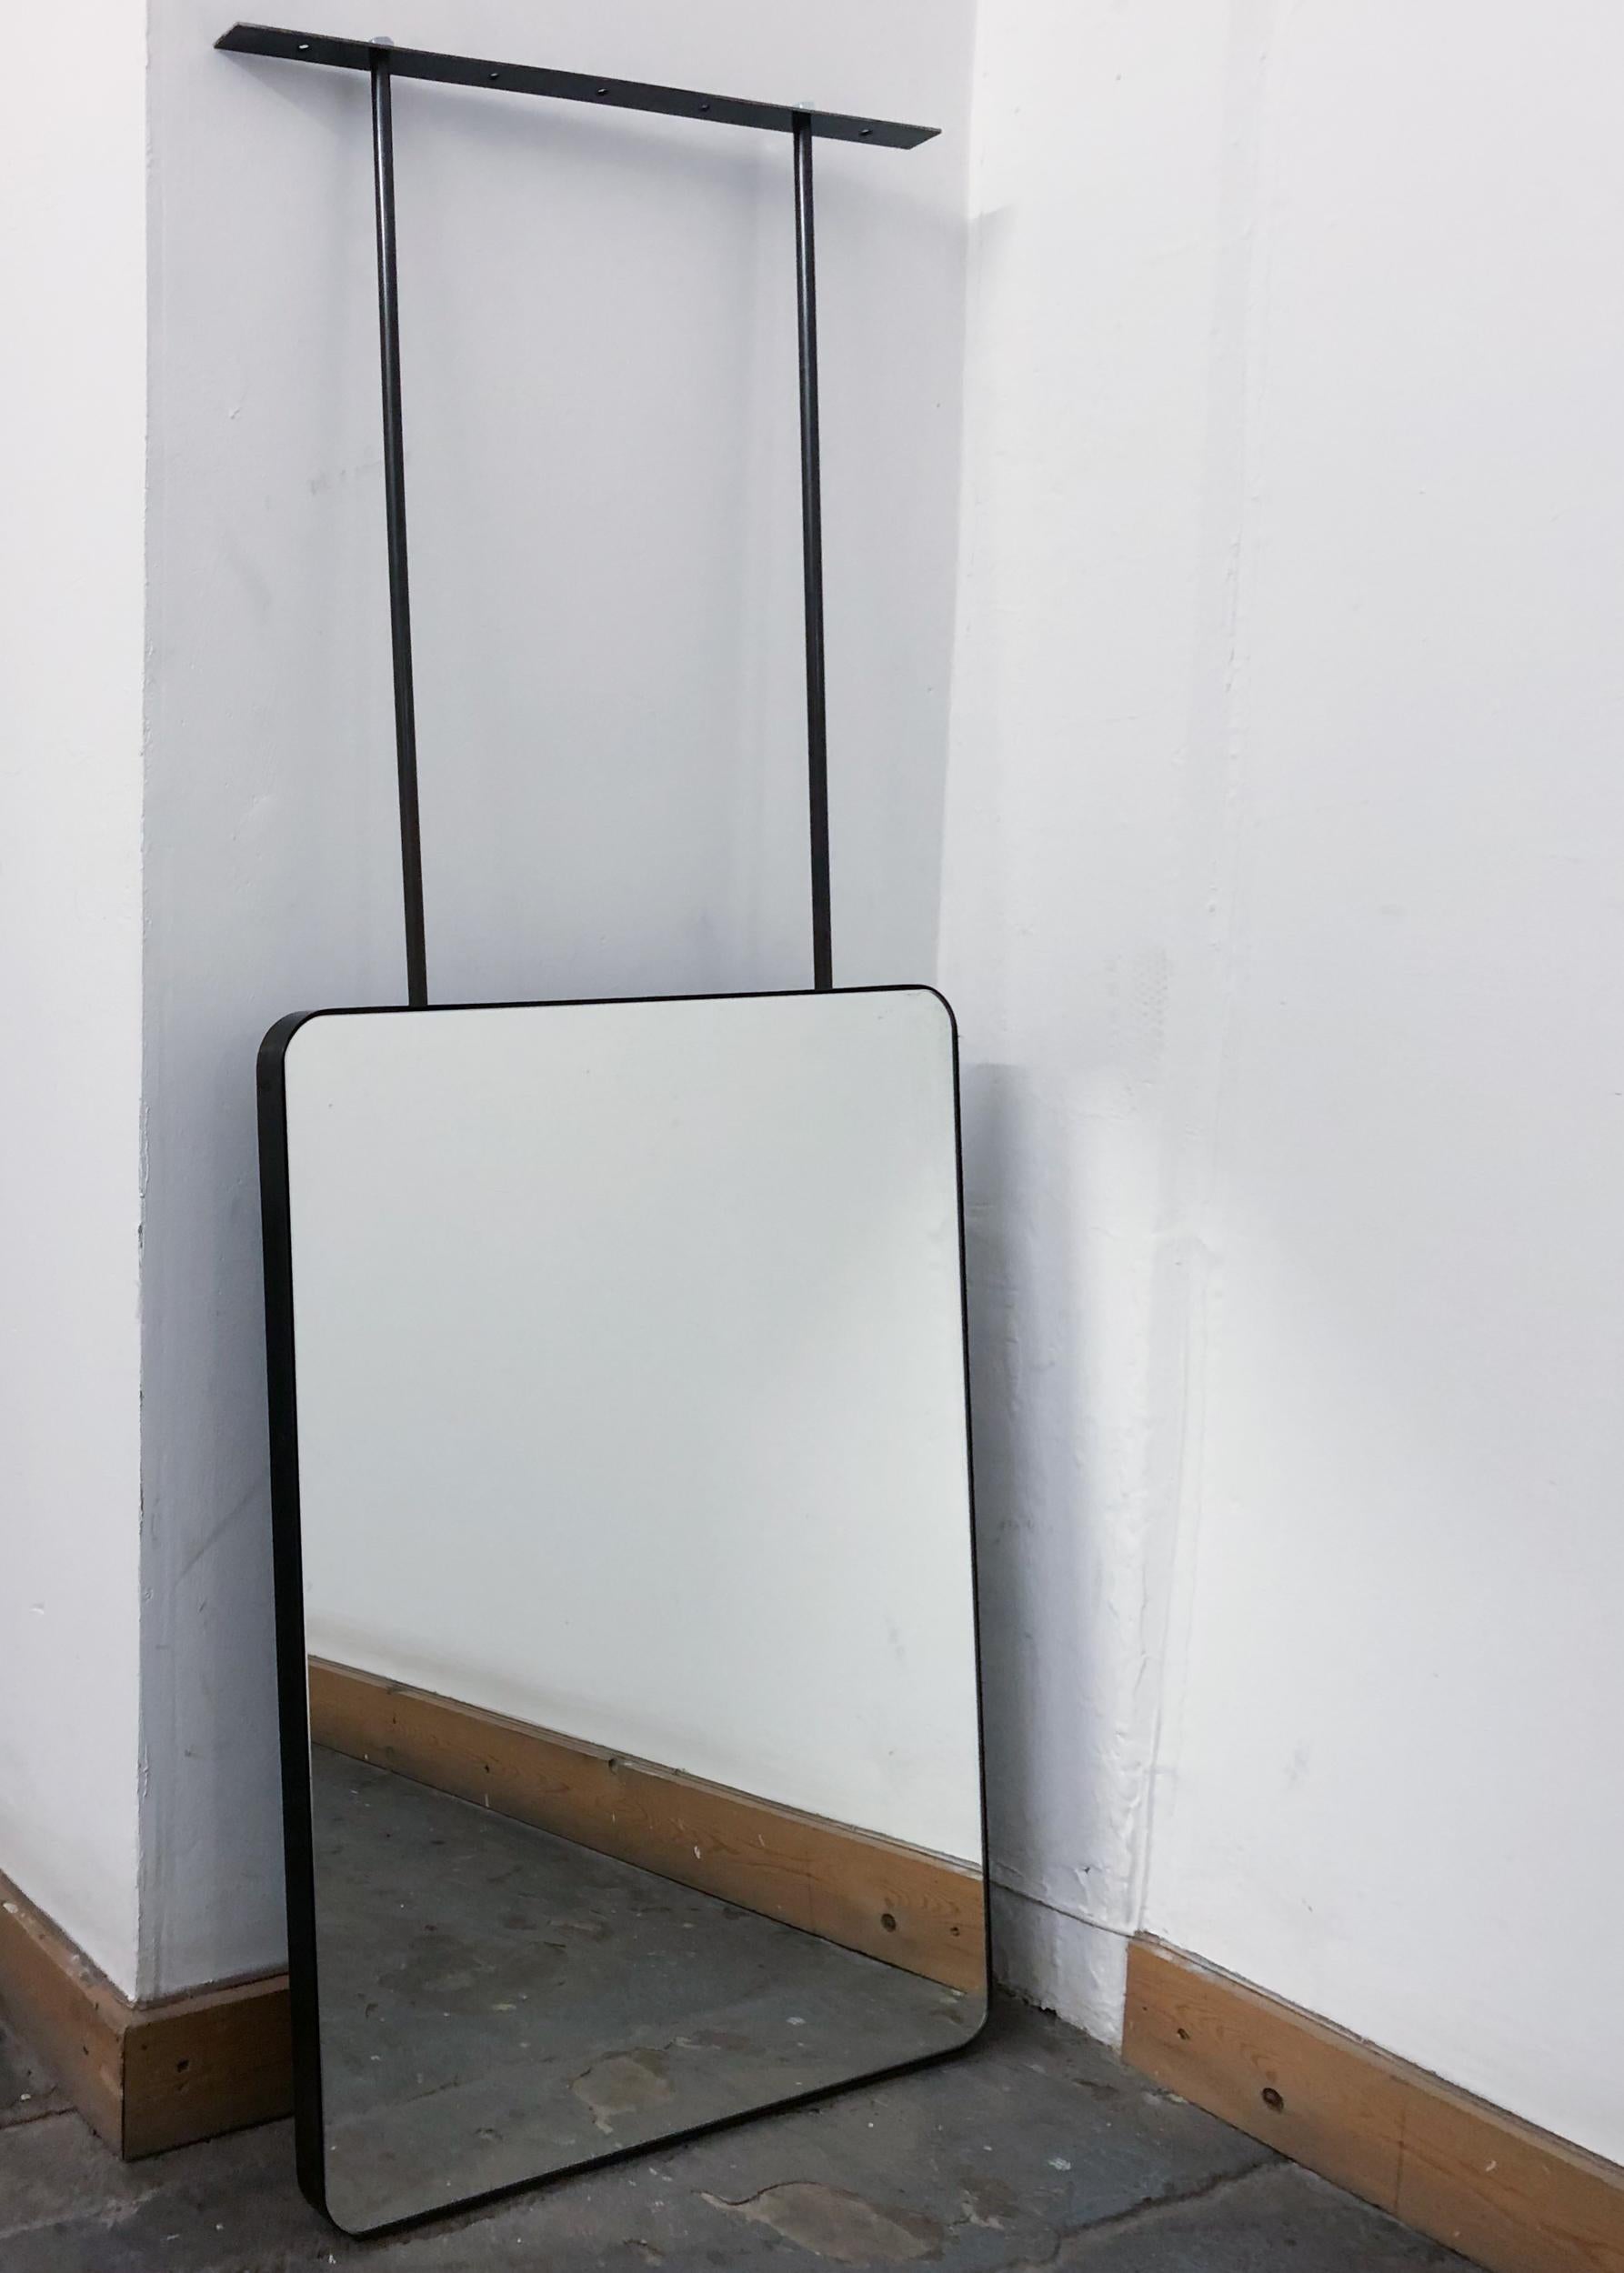 Wunderschöner rechteckiger Spiegel mit abgerundeten Ecken, der von der Decke abgehängt wird. Der Rahmen aus geschwärztem Edelstahl sorgt für einen modernen, metallischen Industrie-Look.

Abmessungen des Spiegels: 609mm (24